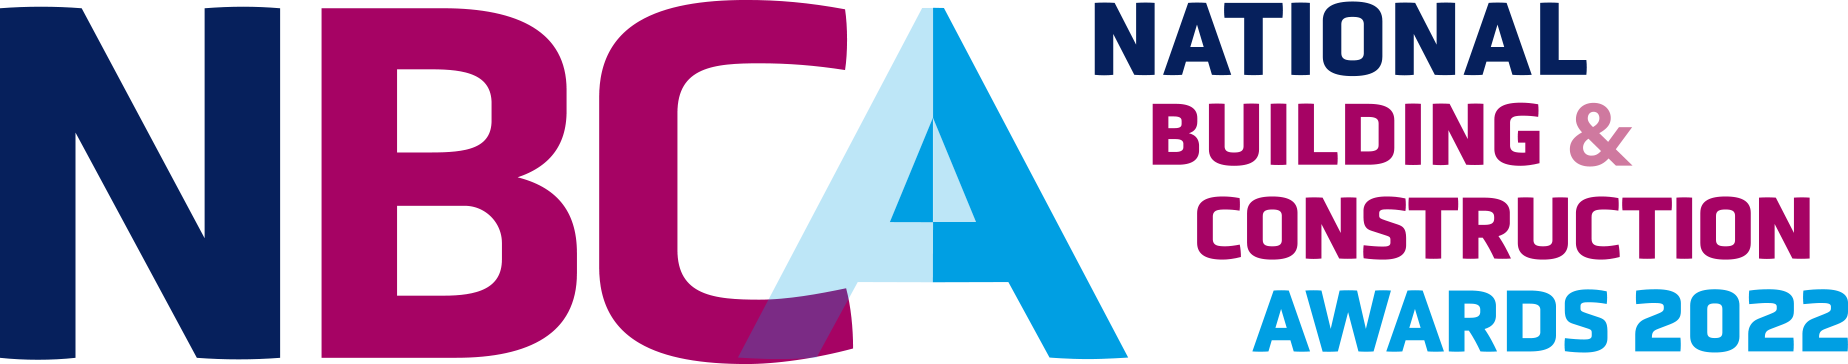 Nbca Logo 2022